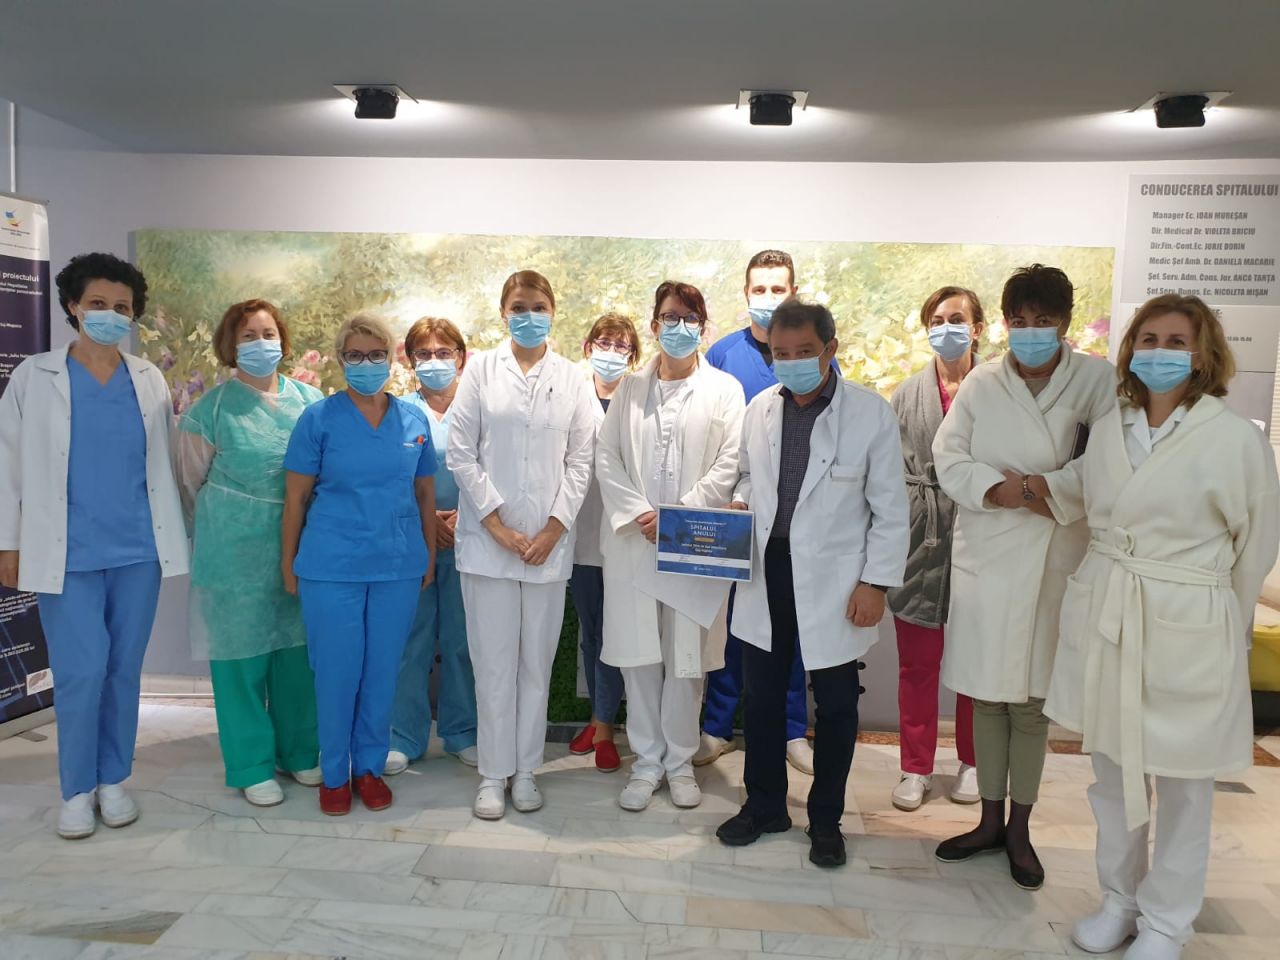 Spitalul de Boli Infecțioase Cluj s-a clasat între finaliști și a fost premiat în competiția Romanian Healthcare Awards 2020